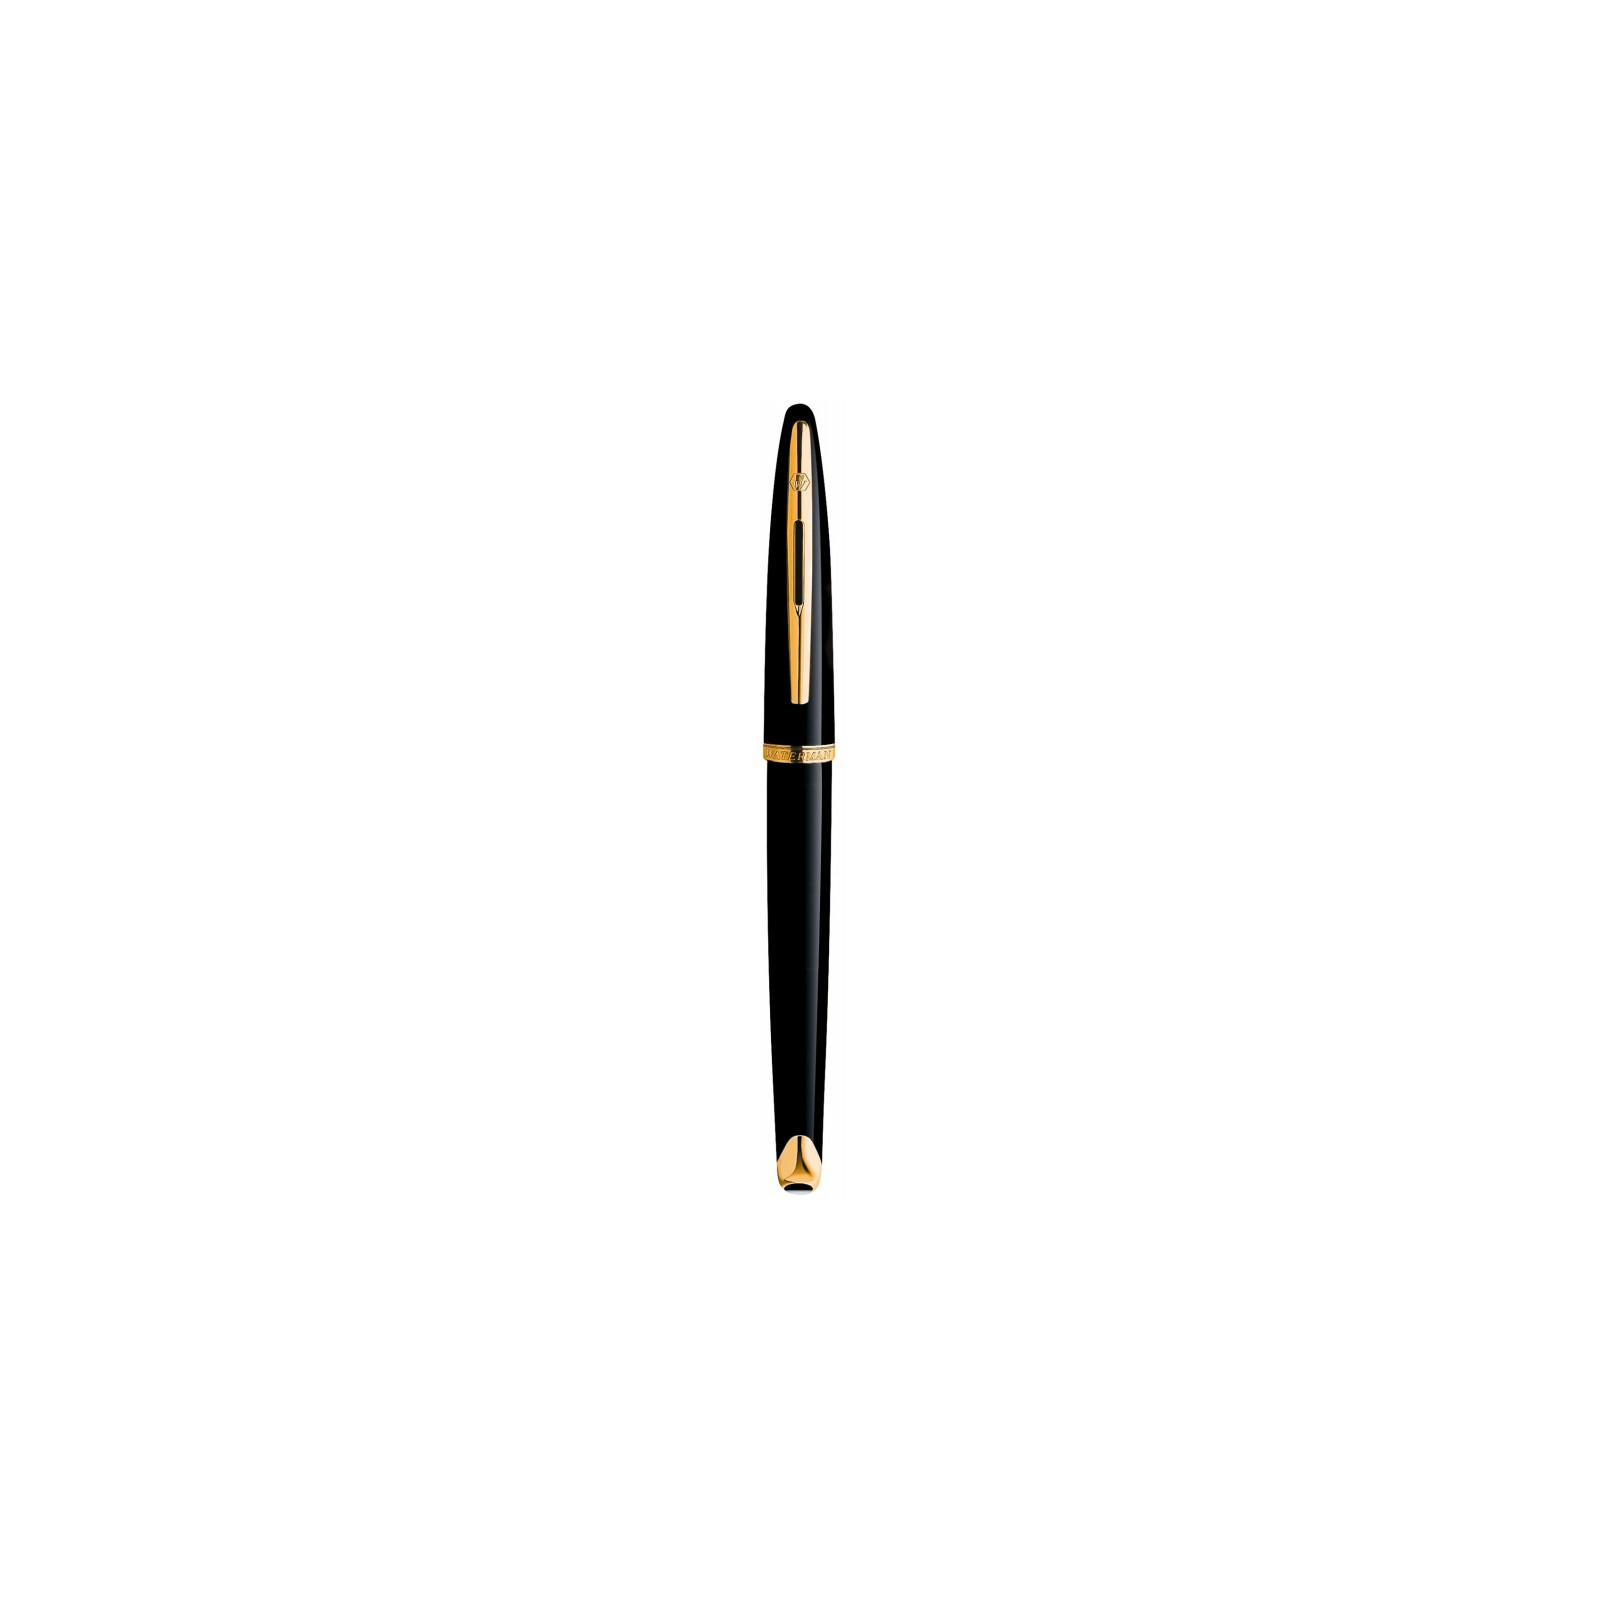 Ручка перьевая Waterman CARENE Black  FP F (11 105) изображение 2